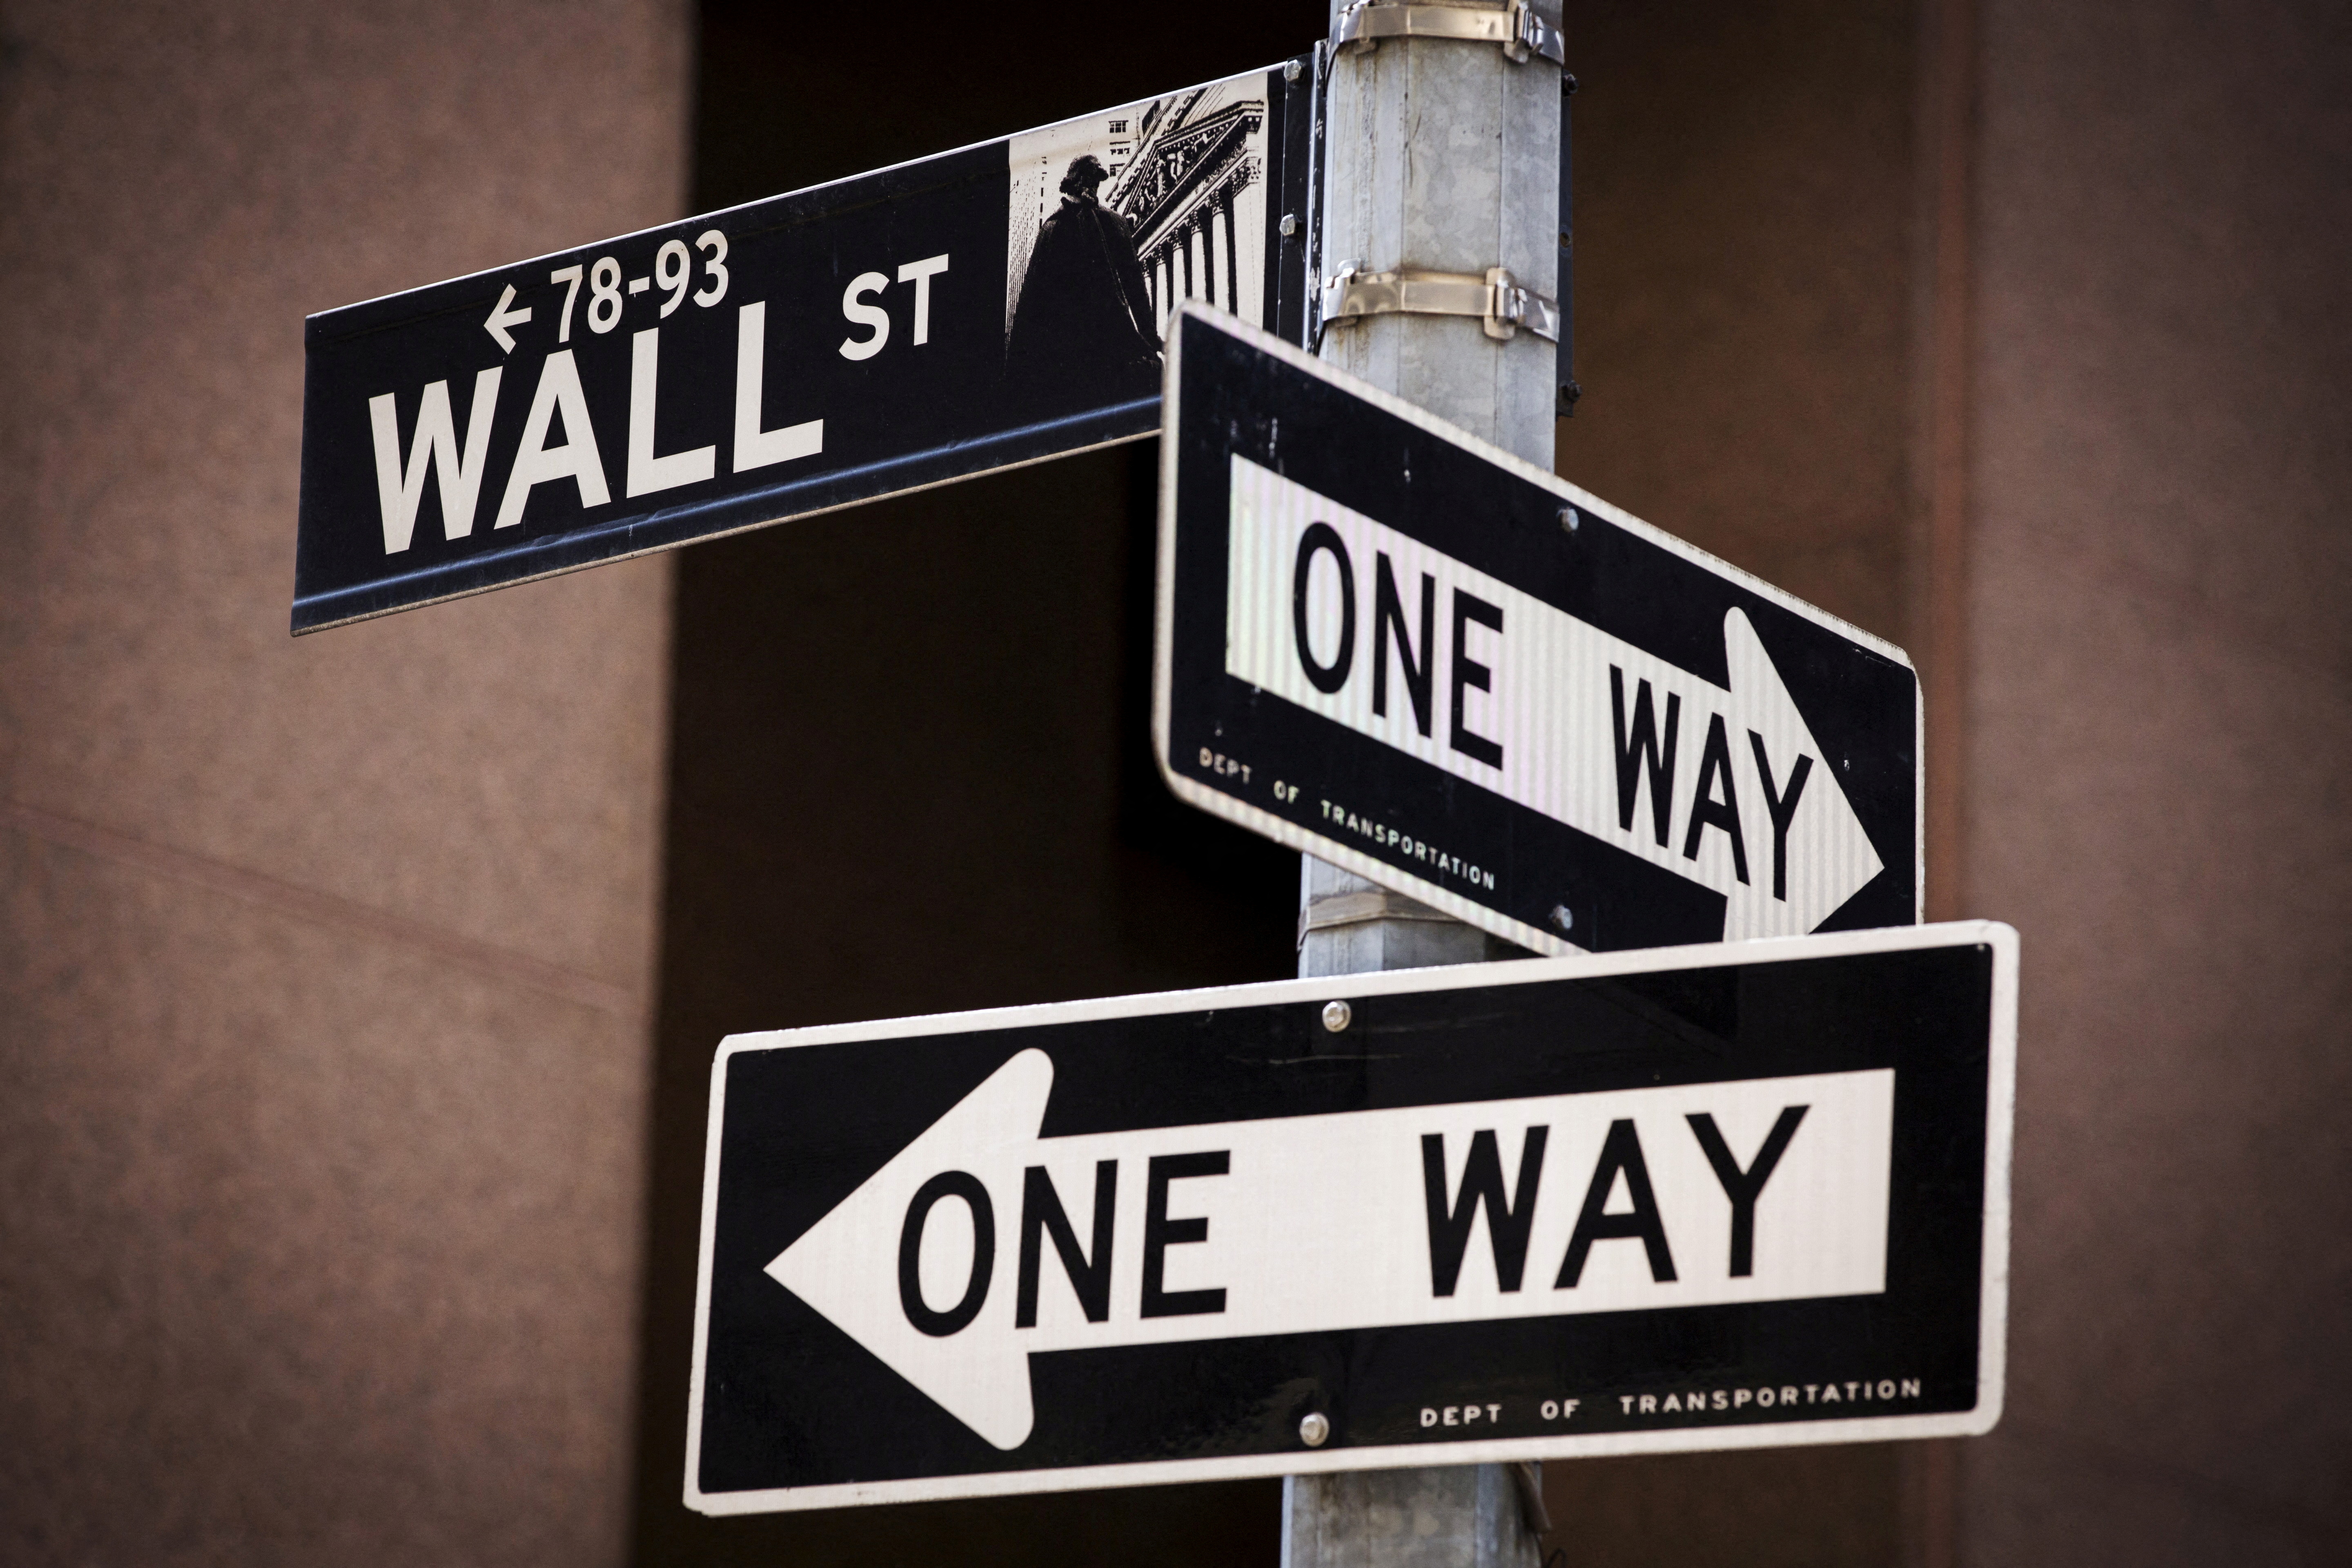 Un cartel de 'Wall St' se ve sobre dos carteles de 'One Way' en Nueva York el 24 de agosto de 2015. REUTERS / Lucas Jackson / Foto de archivo